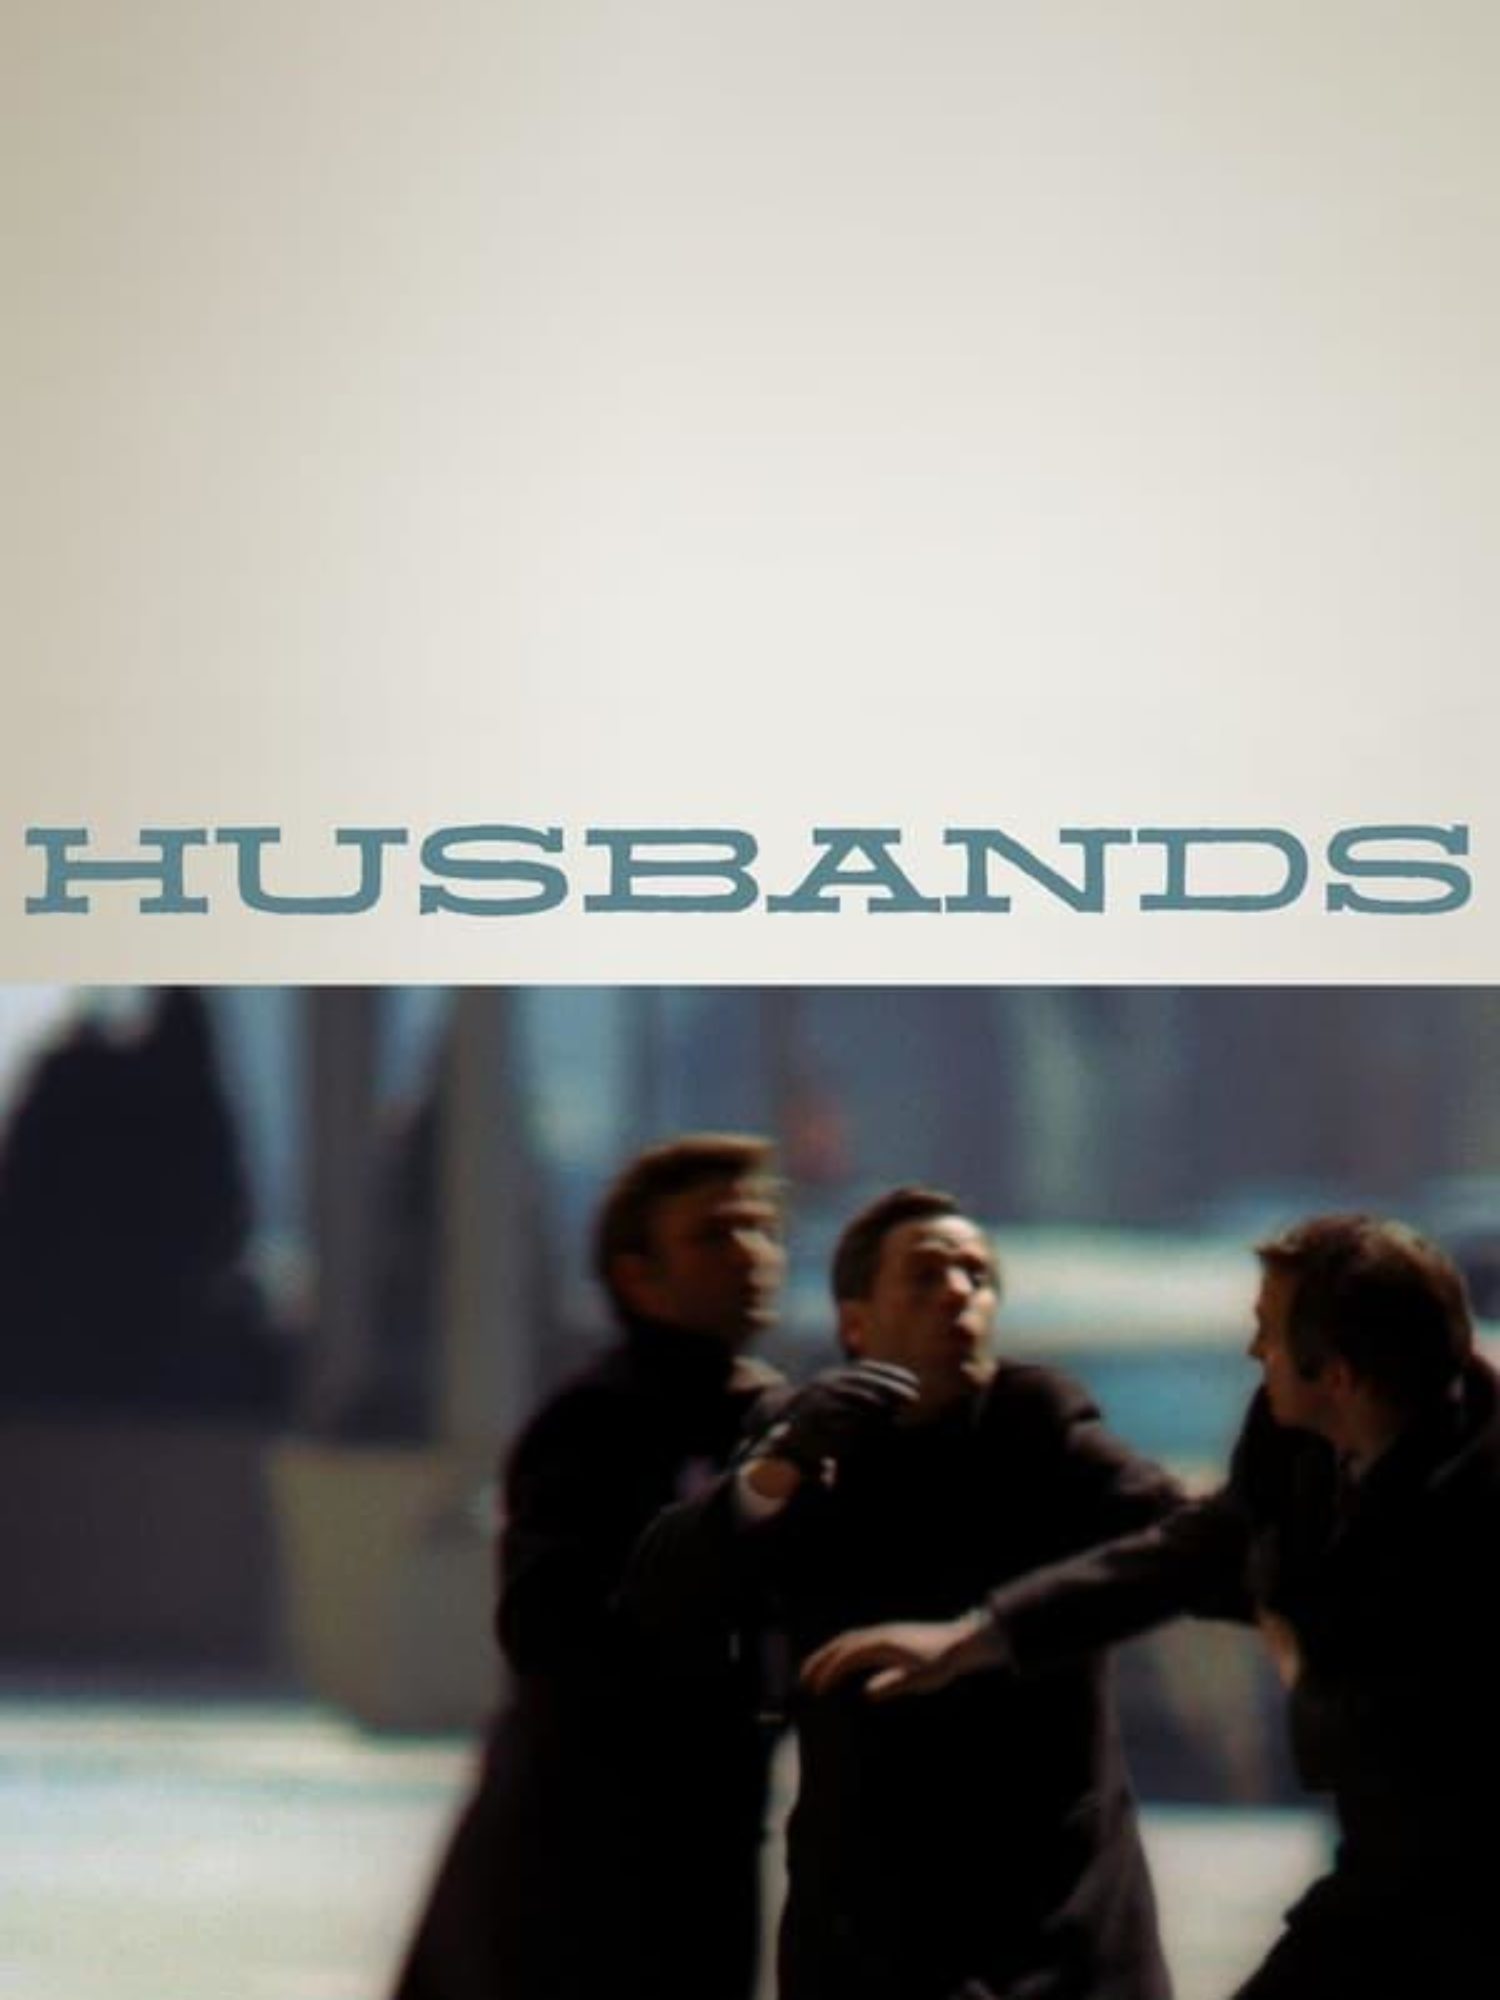 Tastr Time: Husbands